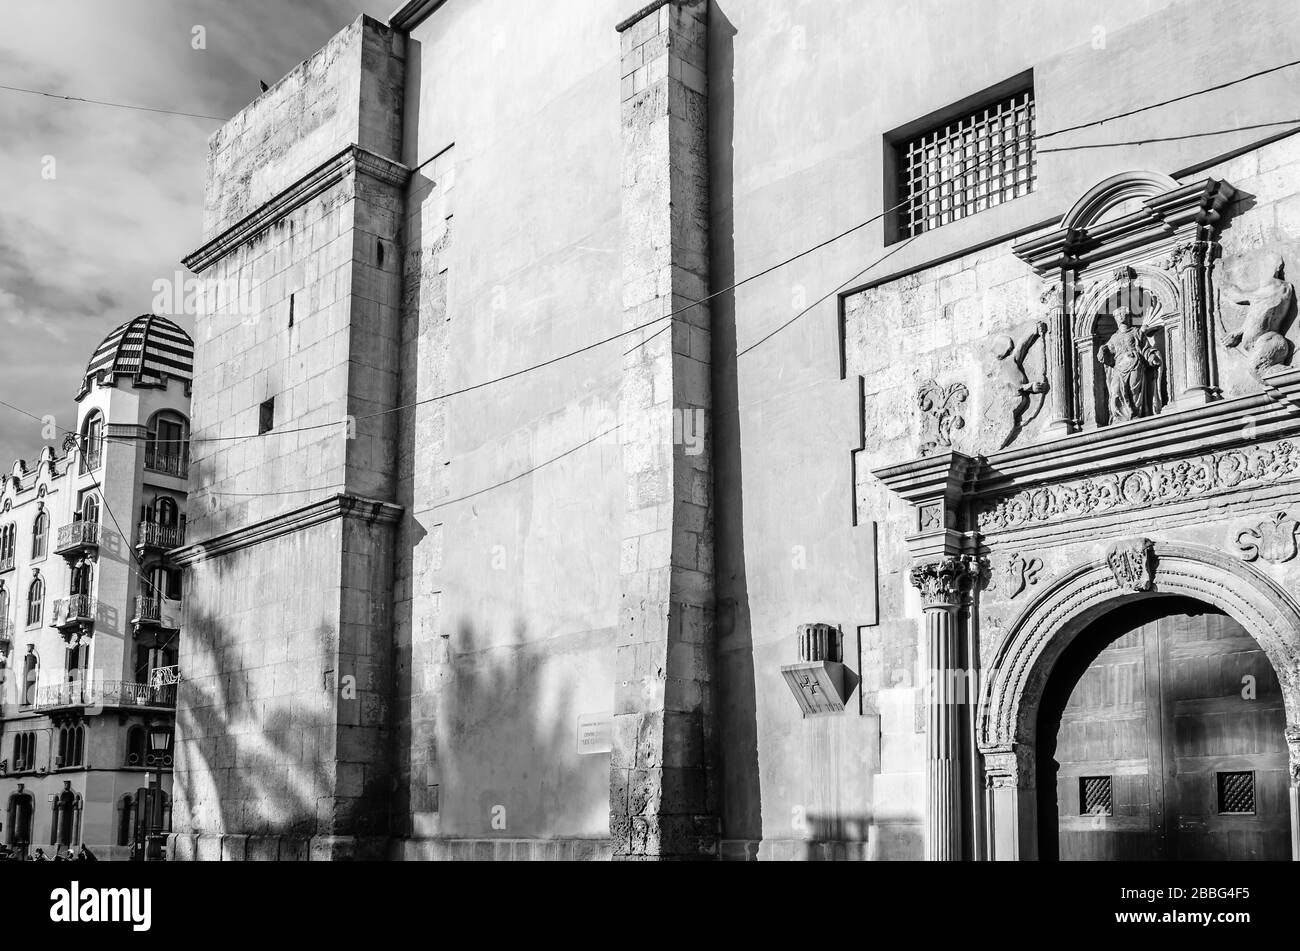 Architecture dans la ville d'Elche, province d'Alicante, Espagne; image en noir et blanc Banque D'Images